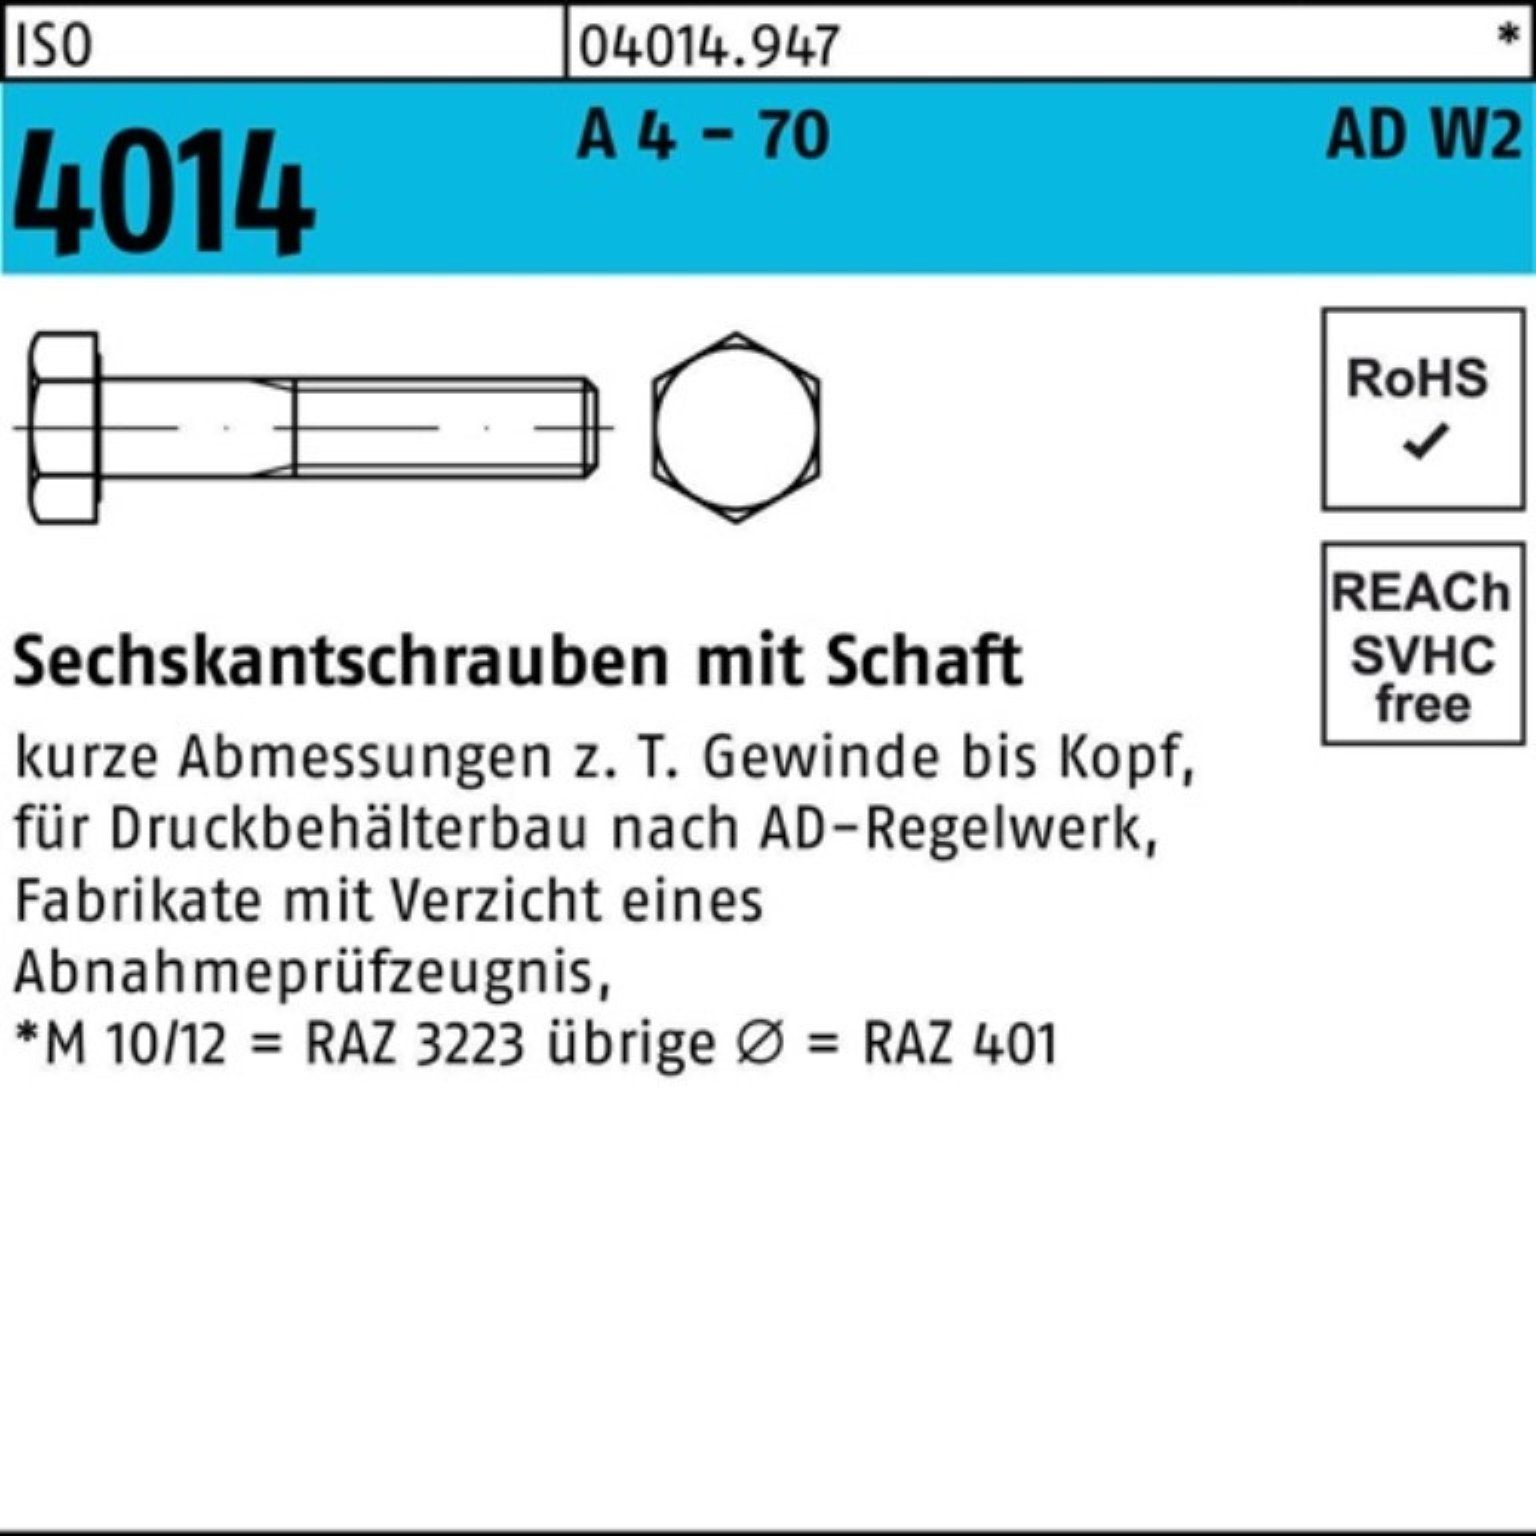 Schaft Sechskantschraube - 1 110 M24x Pack 4 Sechskantschraube ISO 100er 4014 70 Bufab AD-W2 A